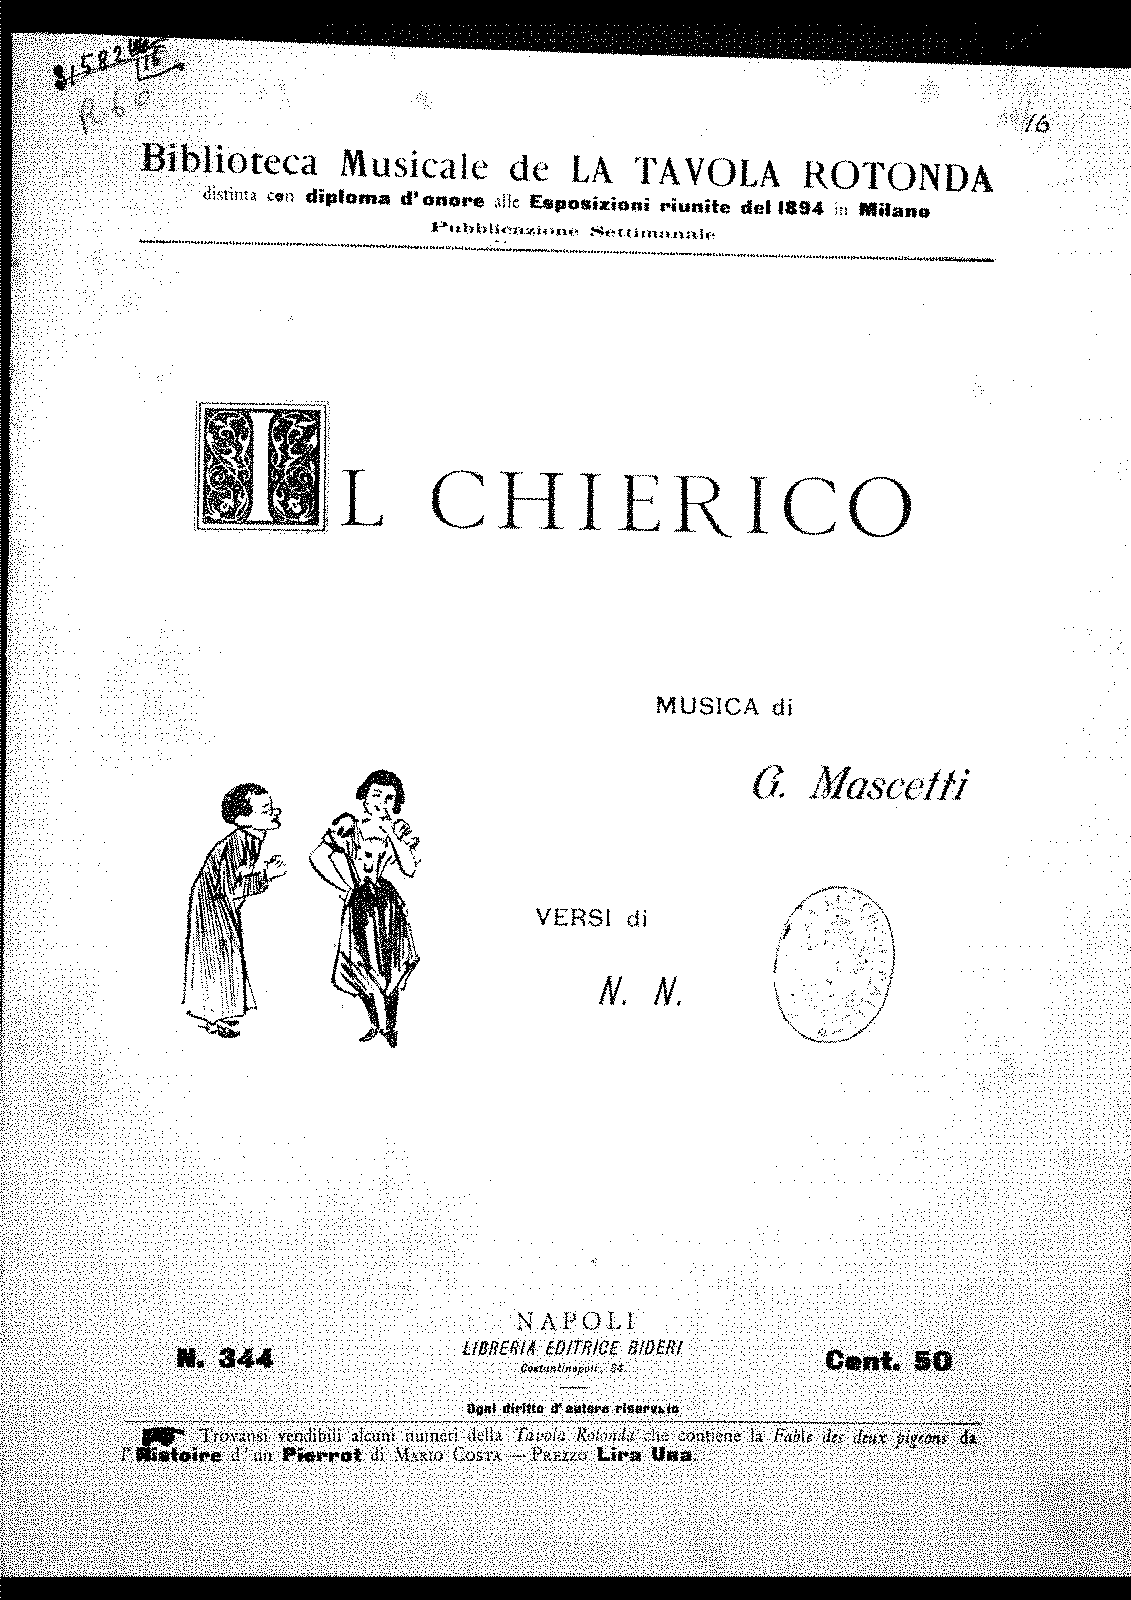 Il chierico (Mascetti, Giovanni) - IMSLP